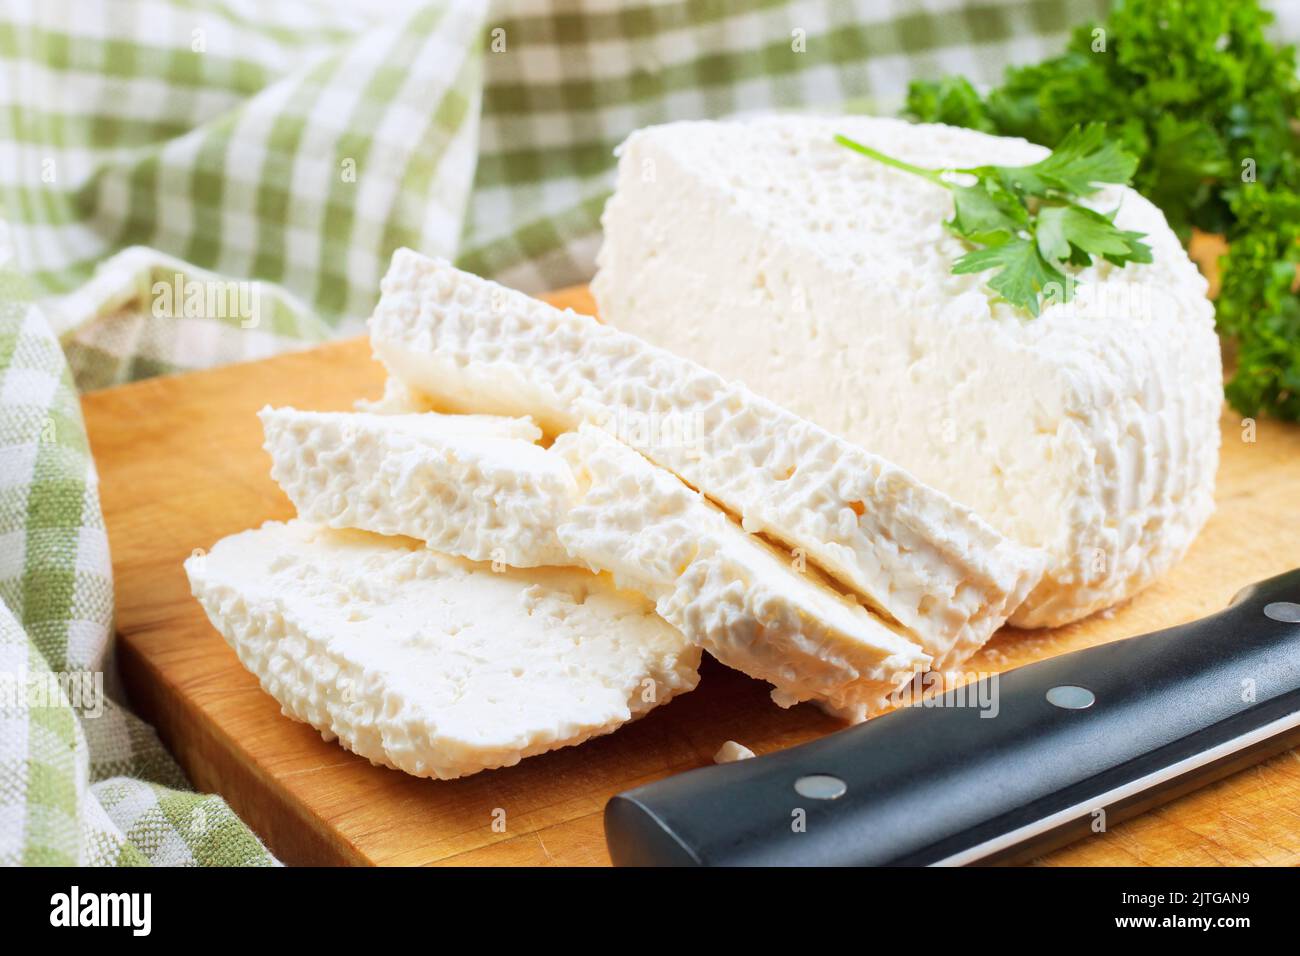 Tranches de fromage cottage frais et persil vert frais sur planche à découper en bois. Produits laitiers, aliments sains. Banque D'Images